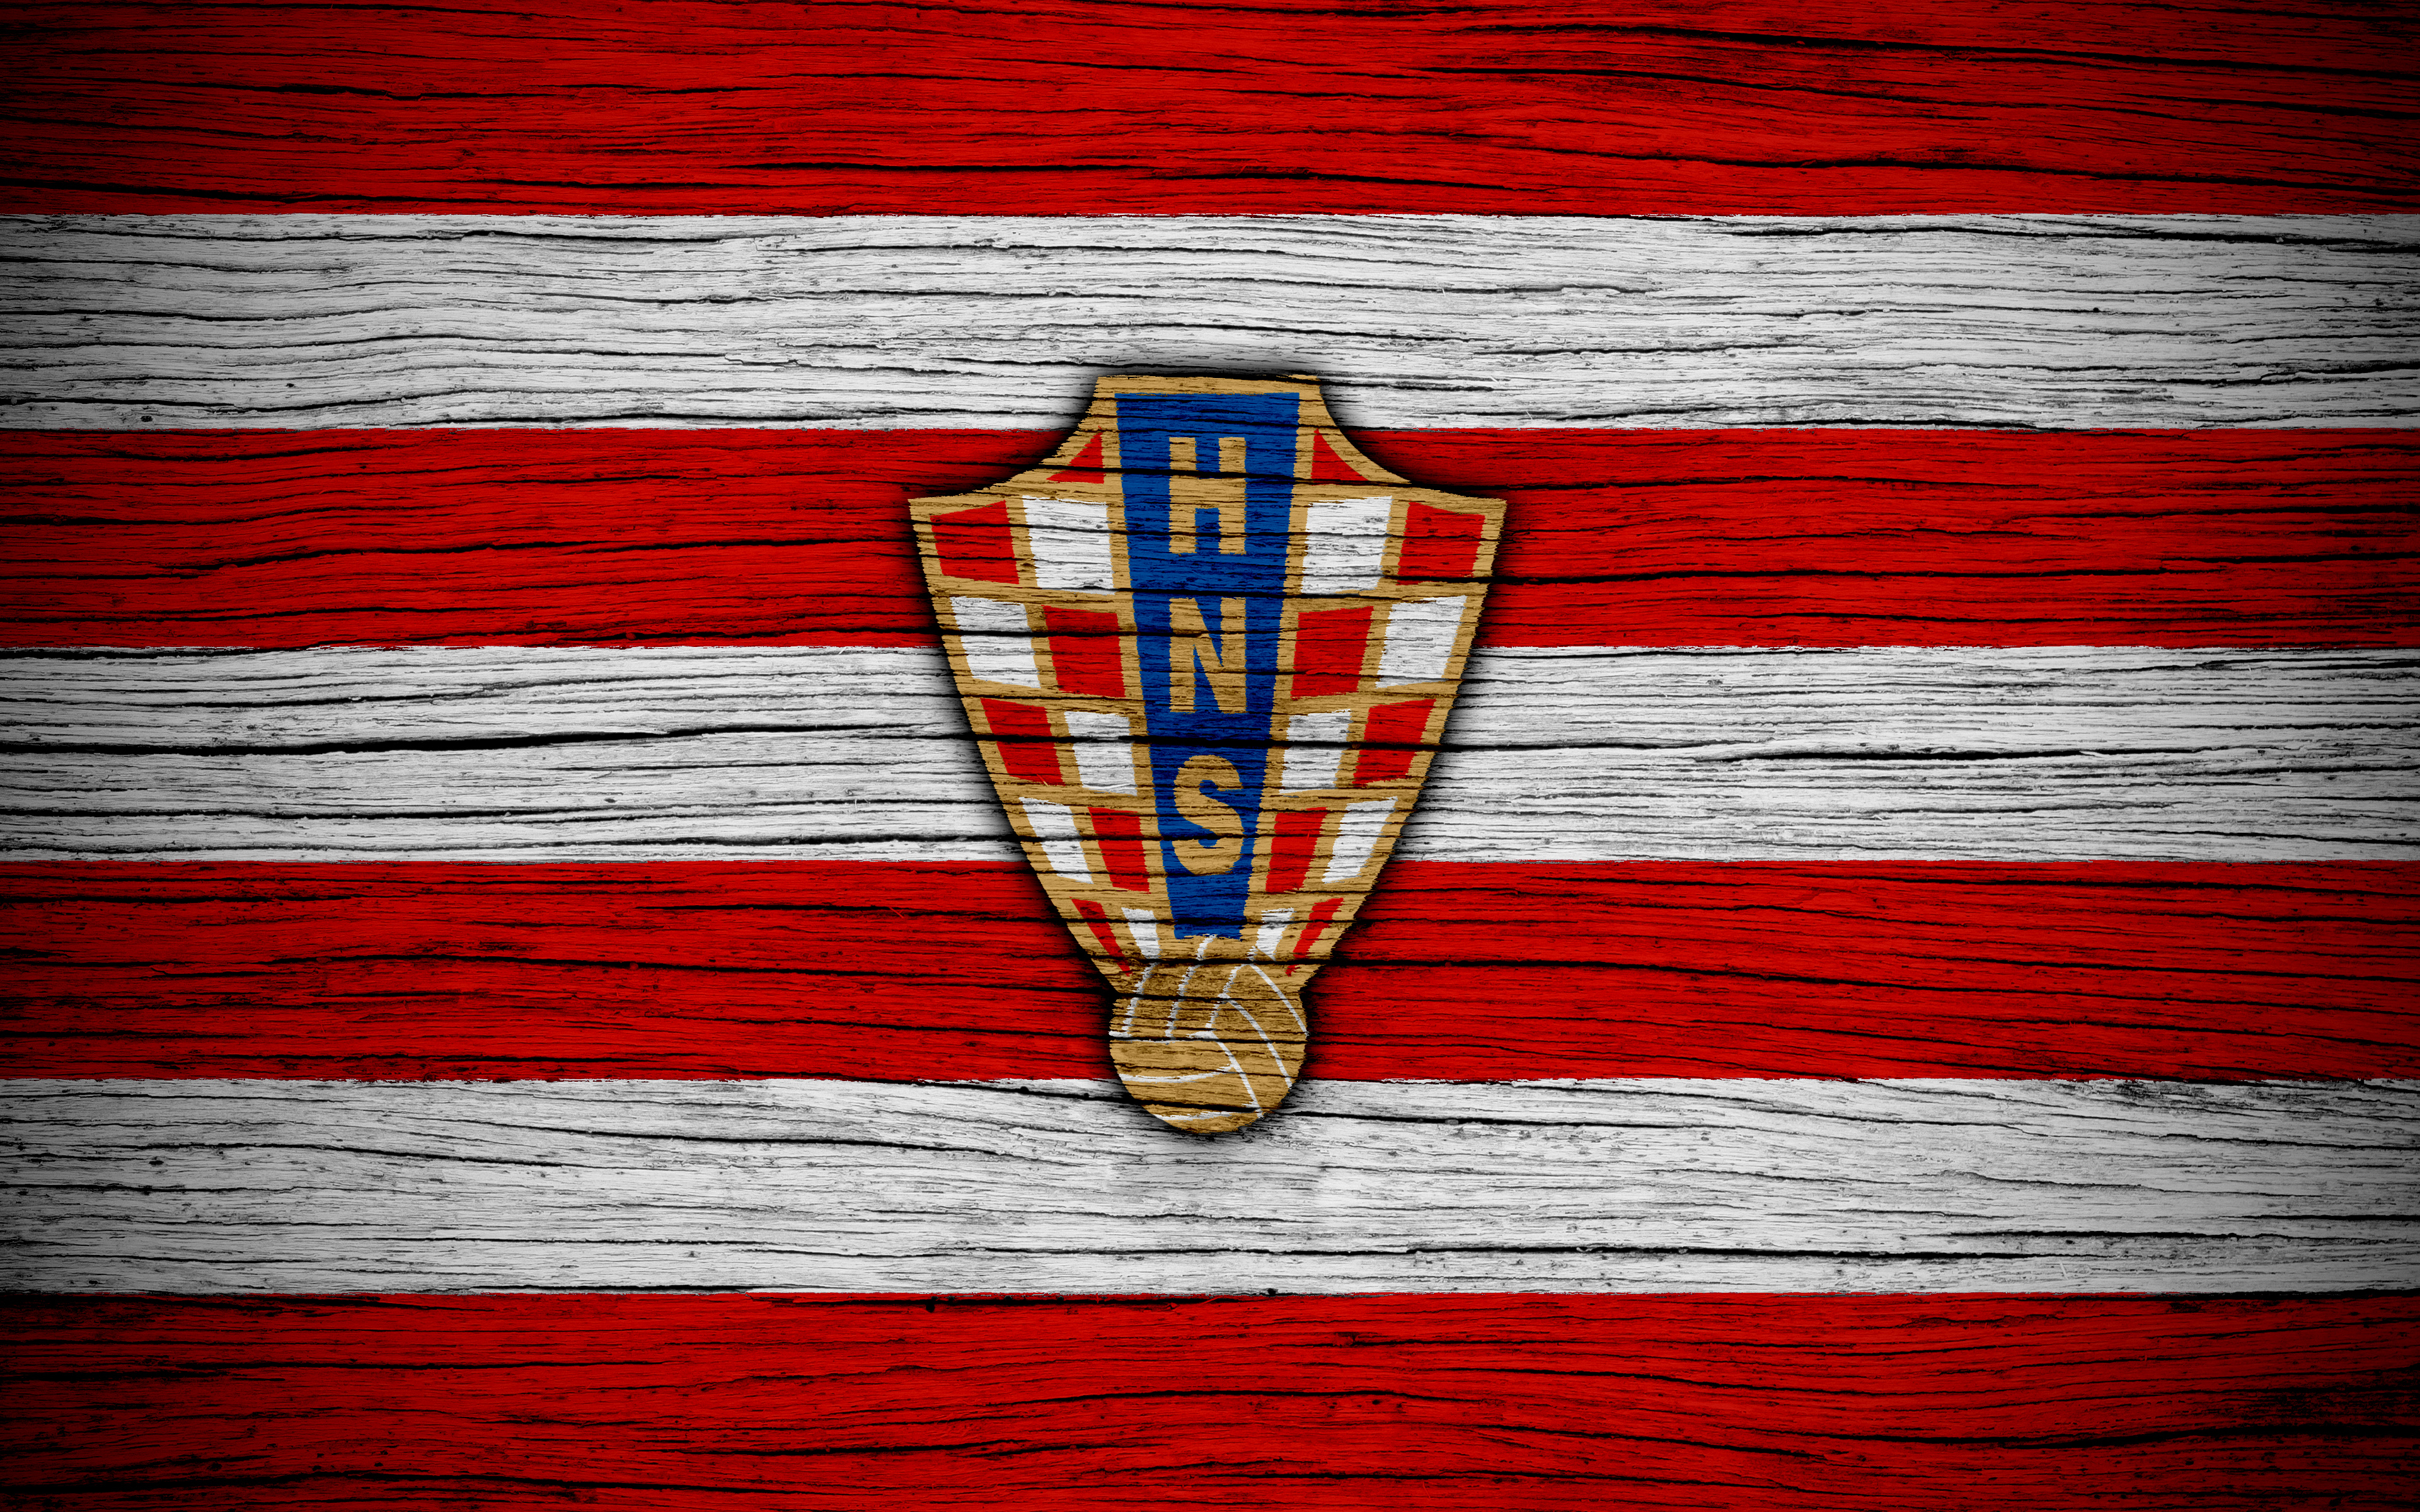 1531468 Обои и Сборная Хорватии По Футболу картинки на рабочий стол. Скачать  заставки на ПК бесплатно